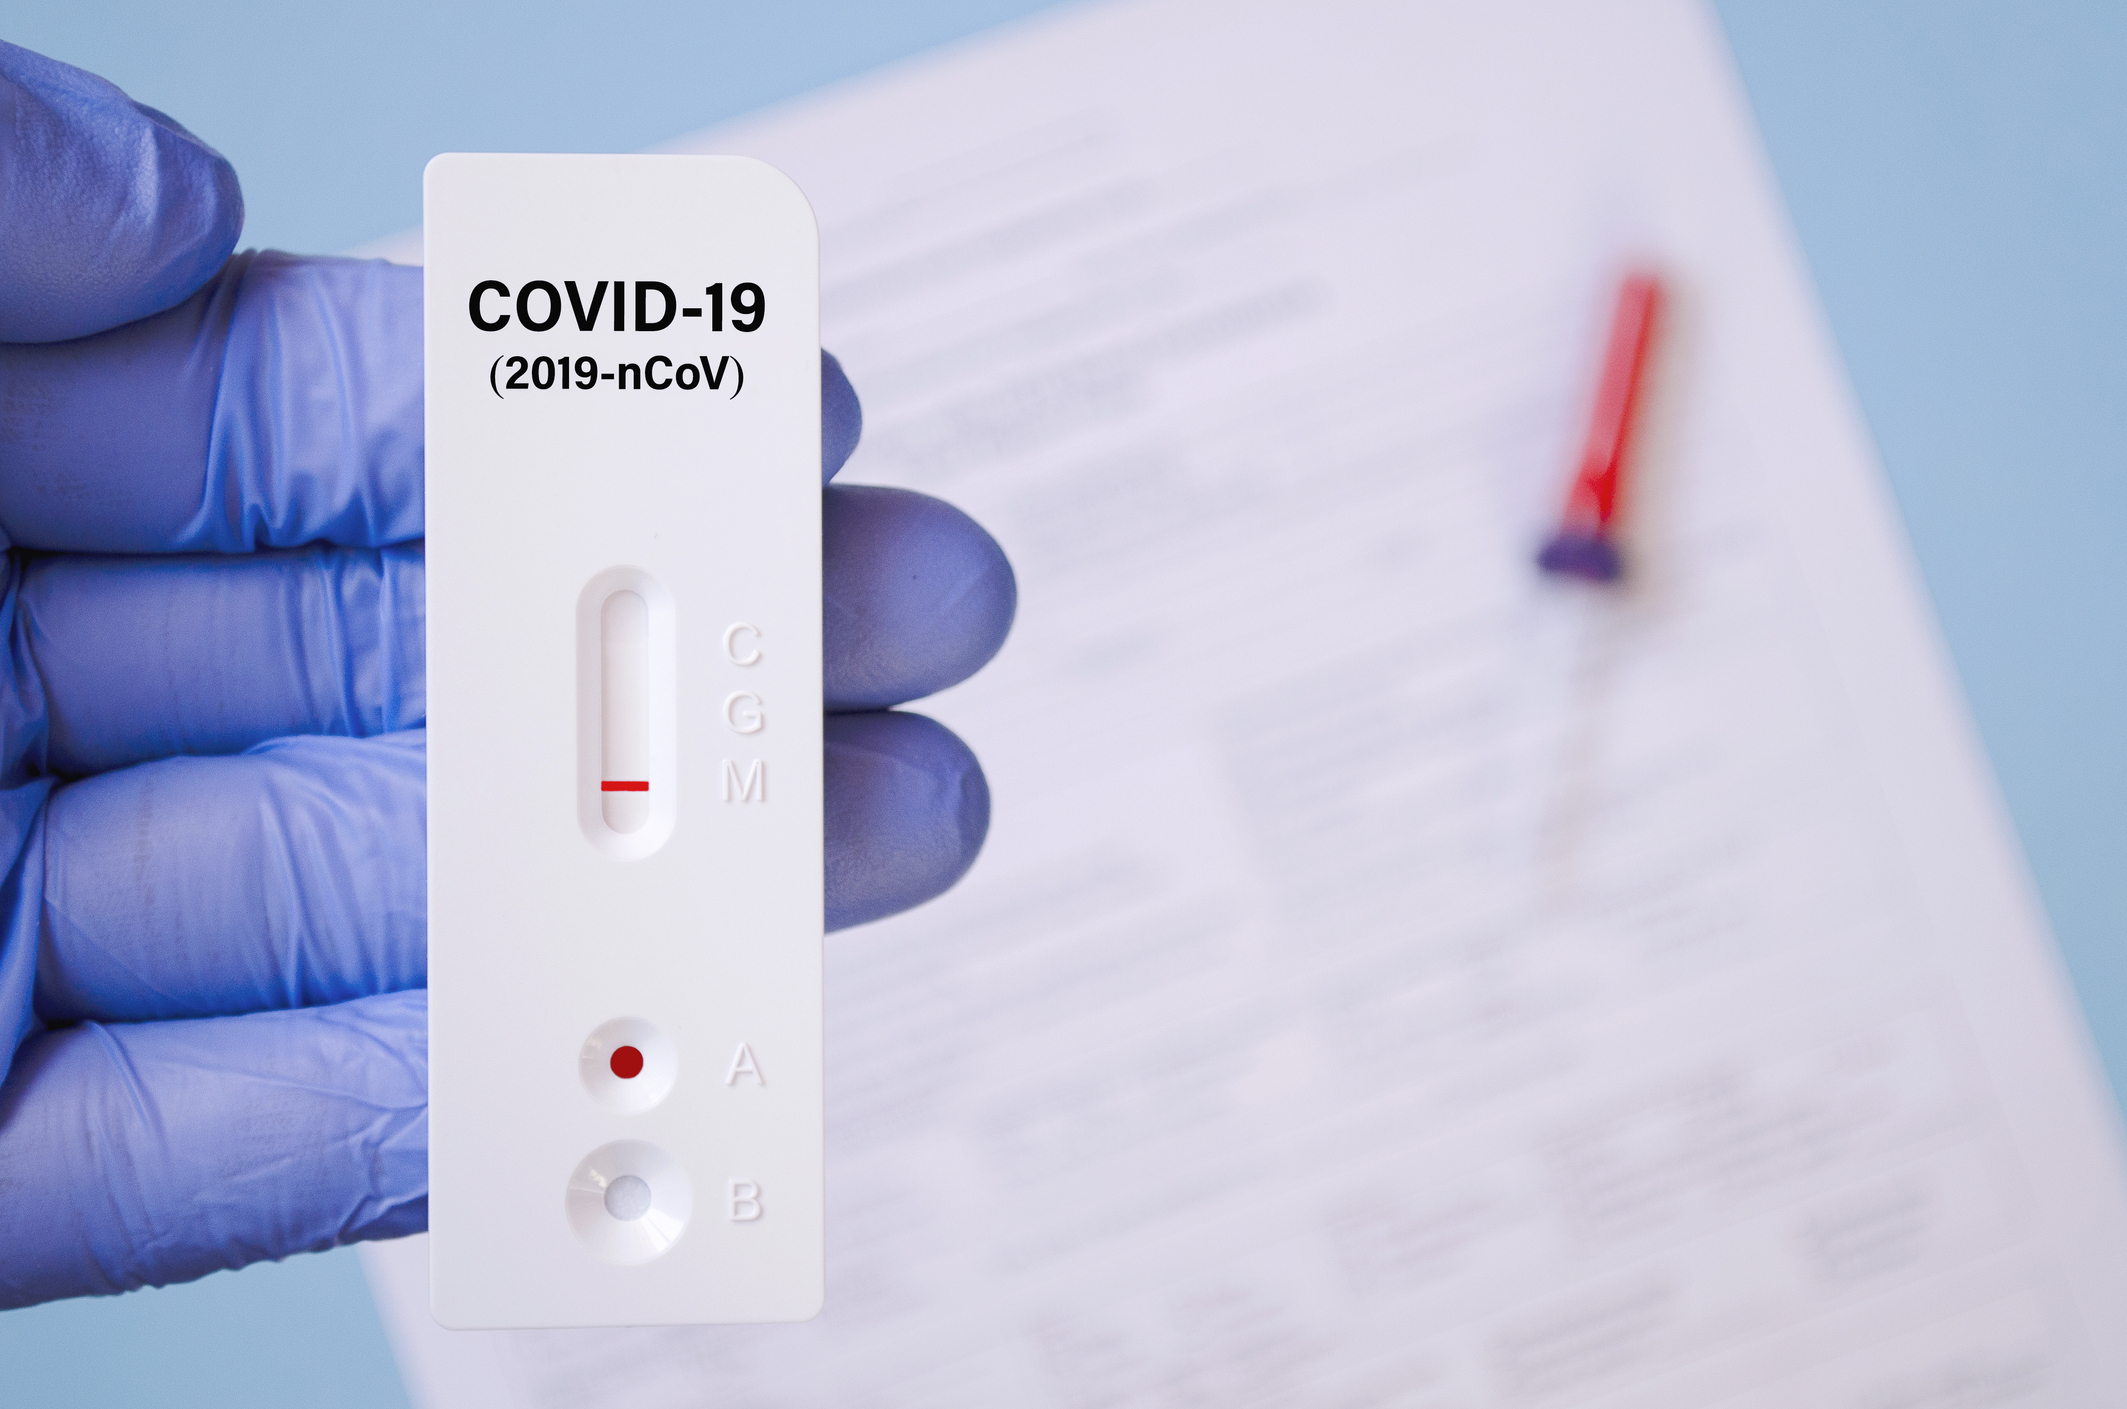 Ya disponible el test de autodiagnóstico del Covid-19* sin receta médica